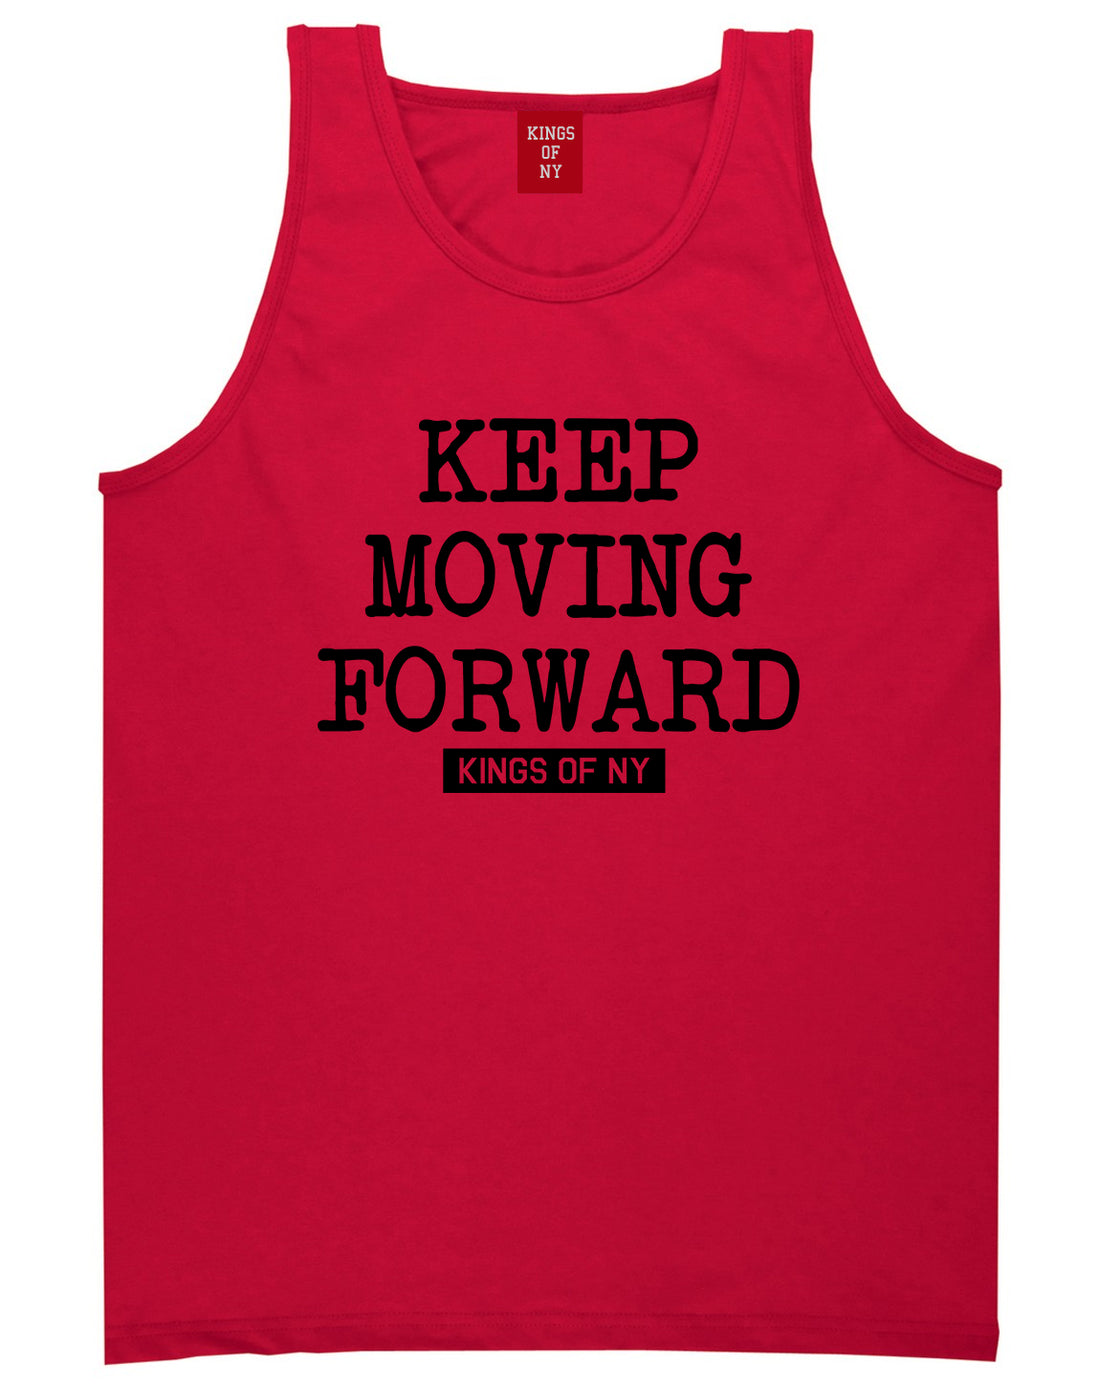 Keep Moving Forward Mens Tank Top Shirt Red